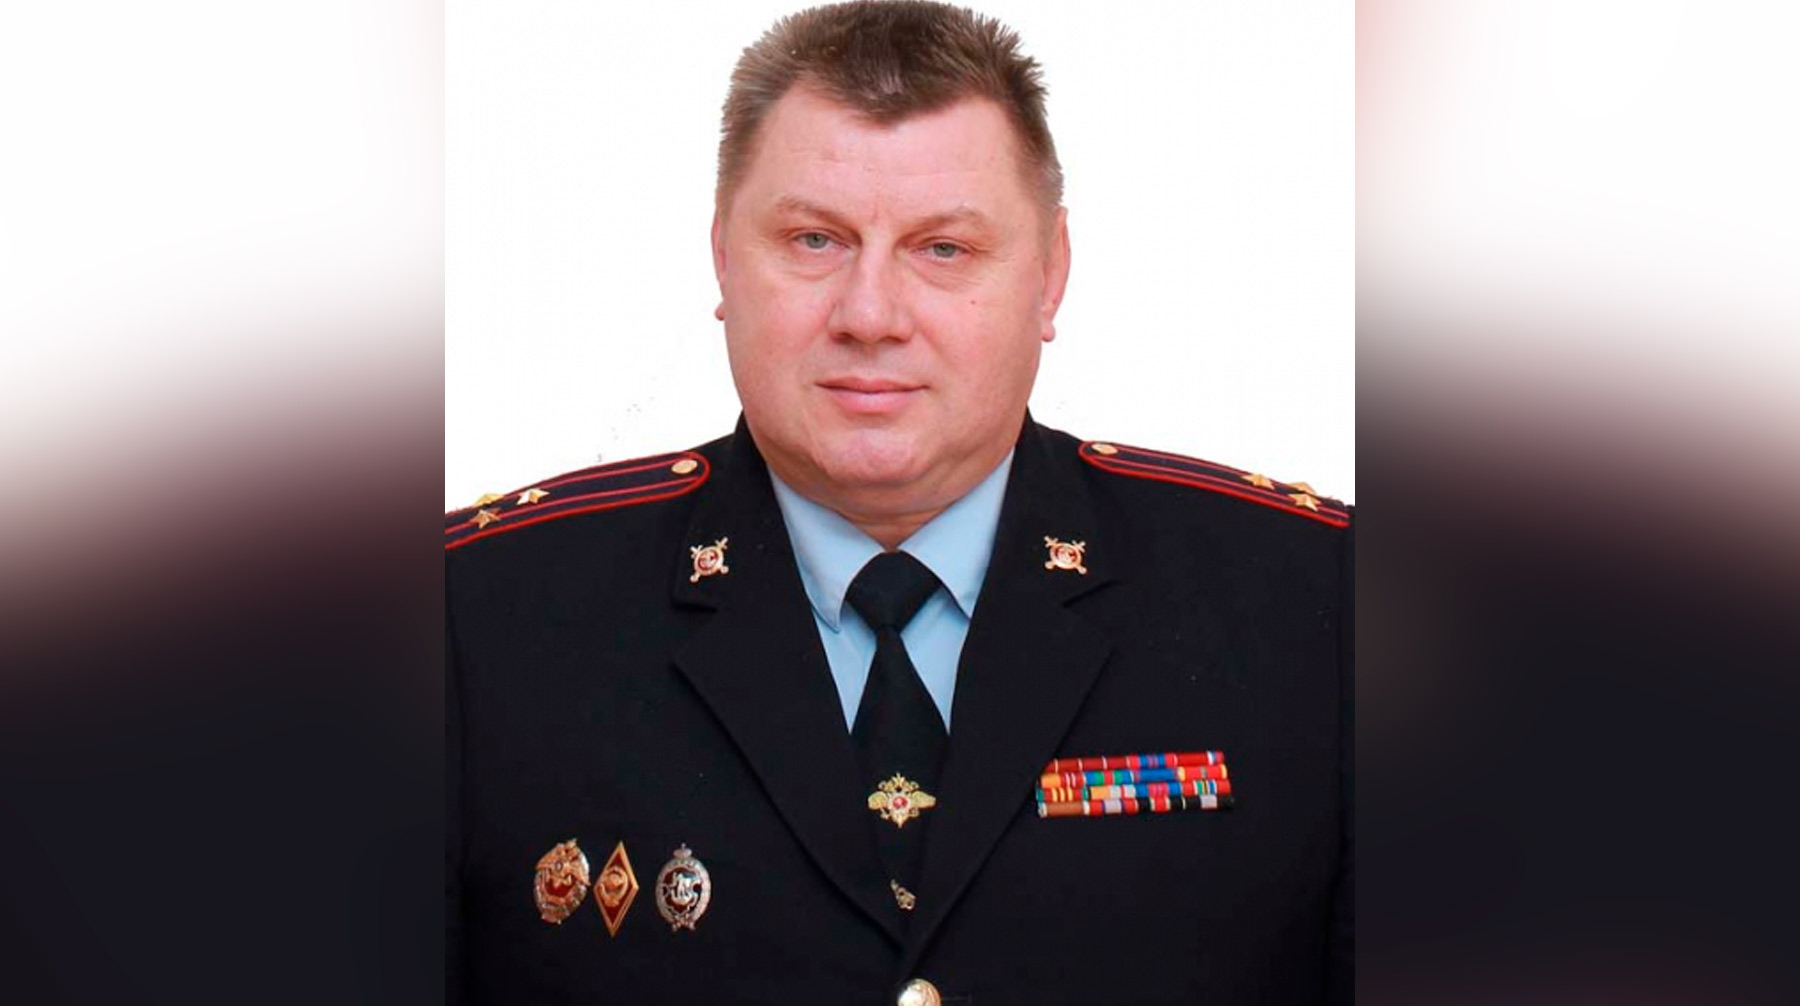 Он мог заразиться инфекцией на работе, рассказал источник ТАСС Полковник полиции Хвенько Игорь Арсеньевич